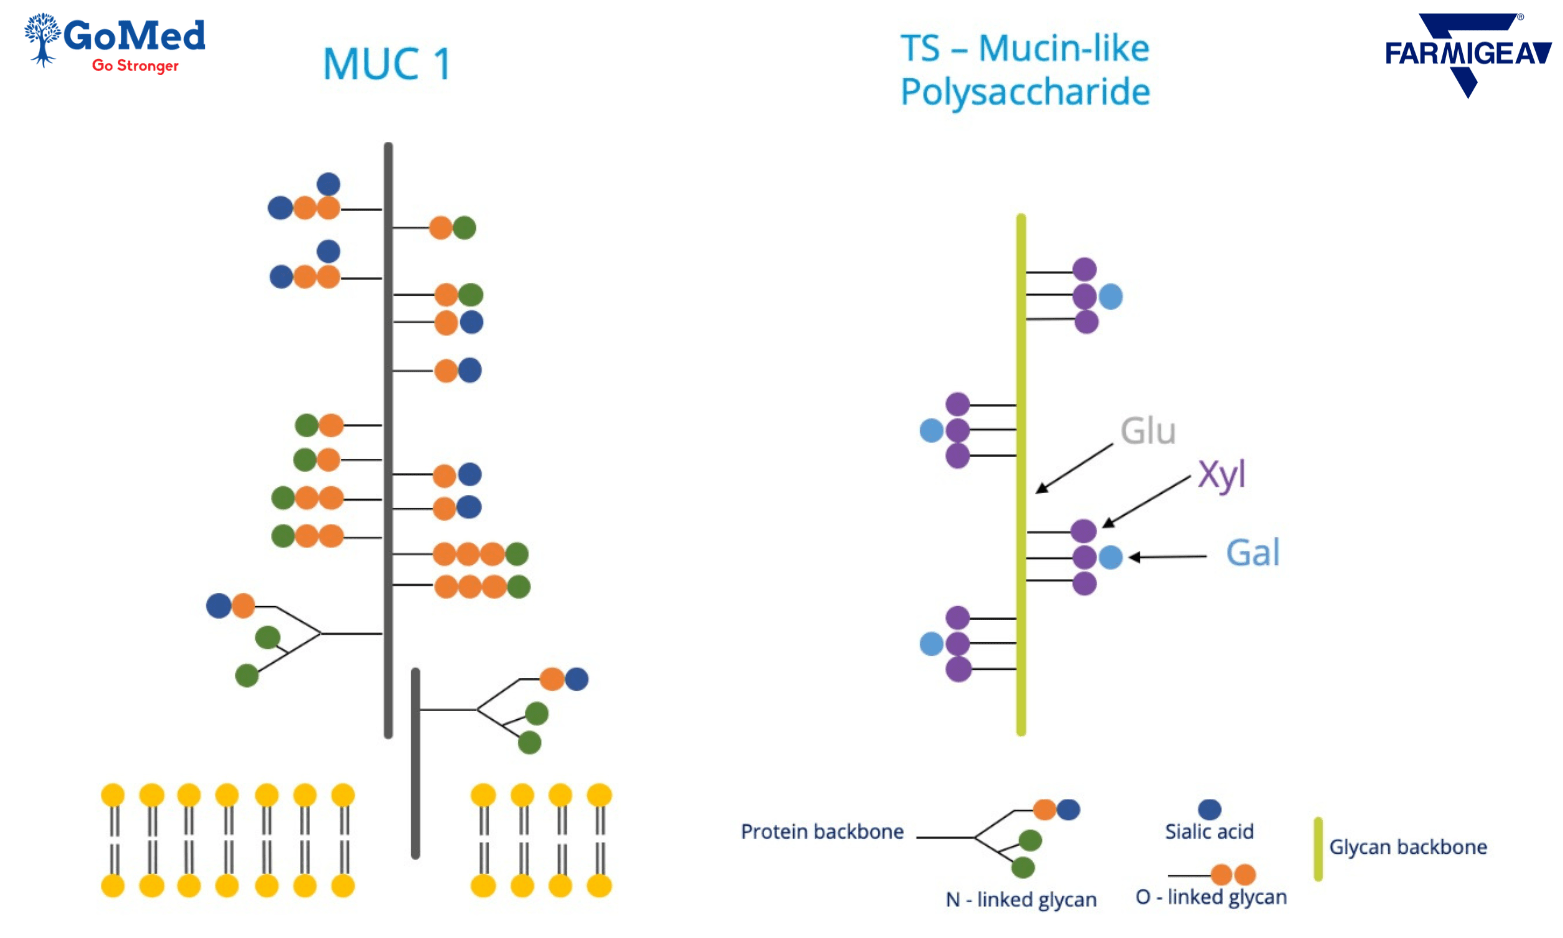 Cấu trúc TS-Polysaccharide giống MUC-1 trong lớp nhầy